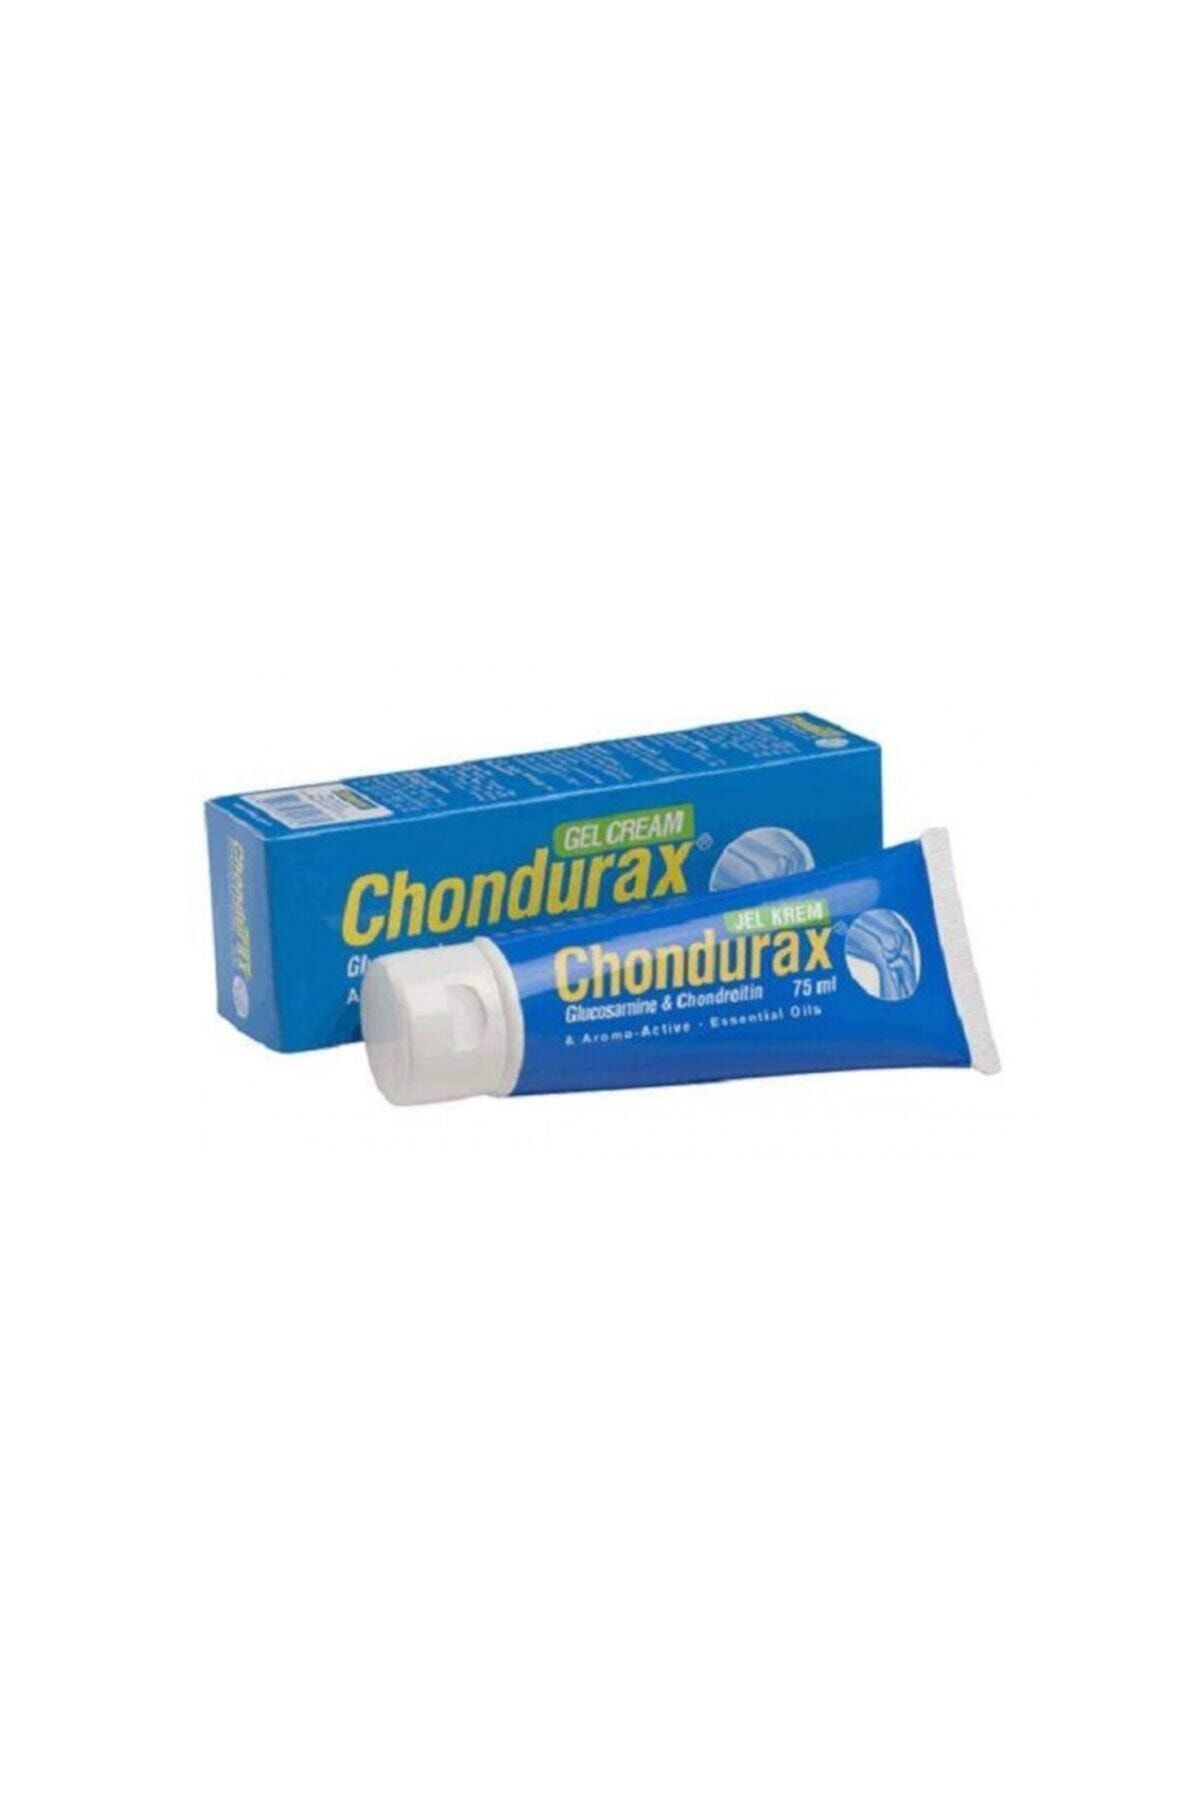 Chondurax Glucosamine Chondroitin Jel Krem 75 Ml